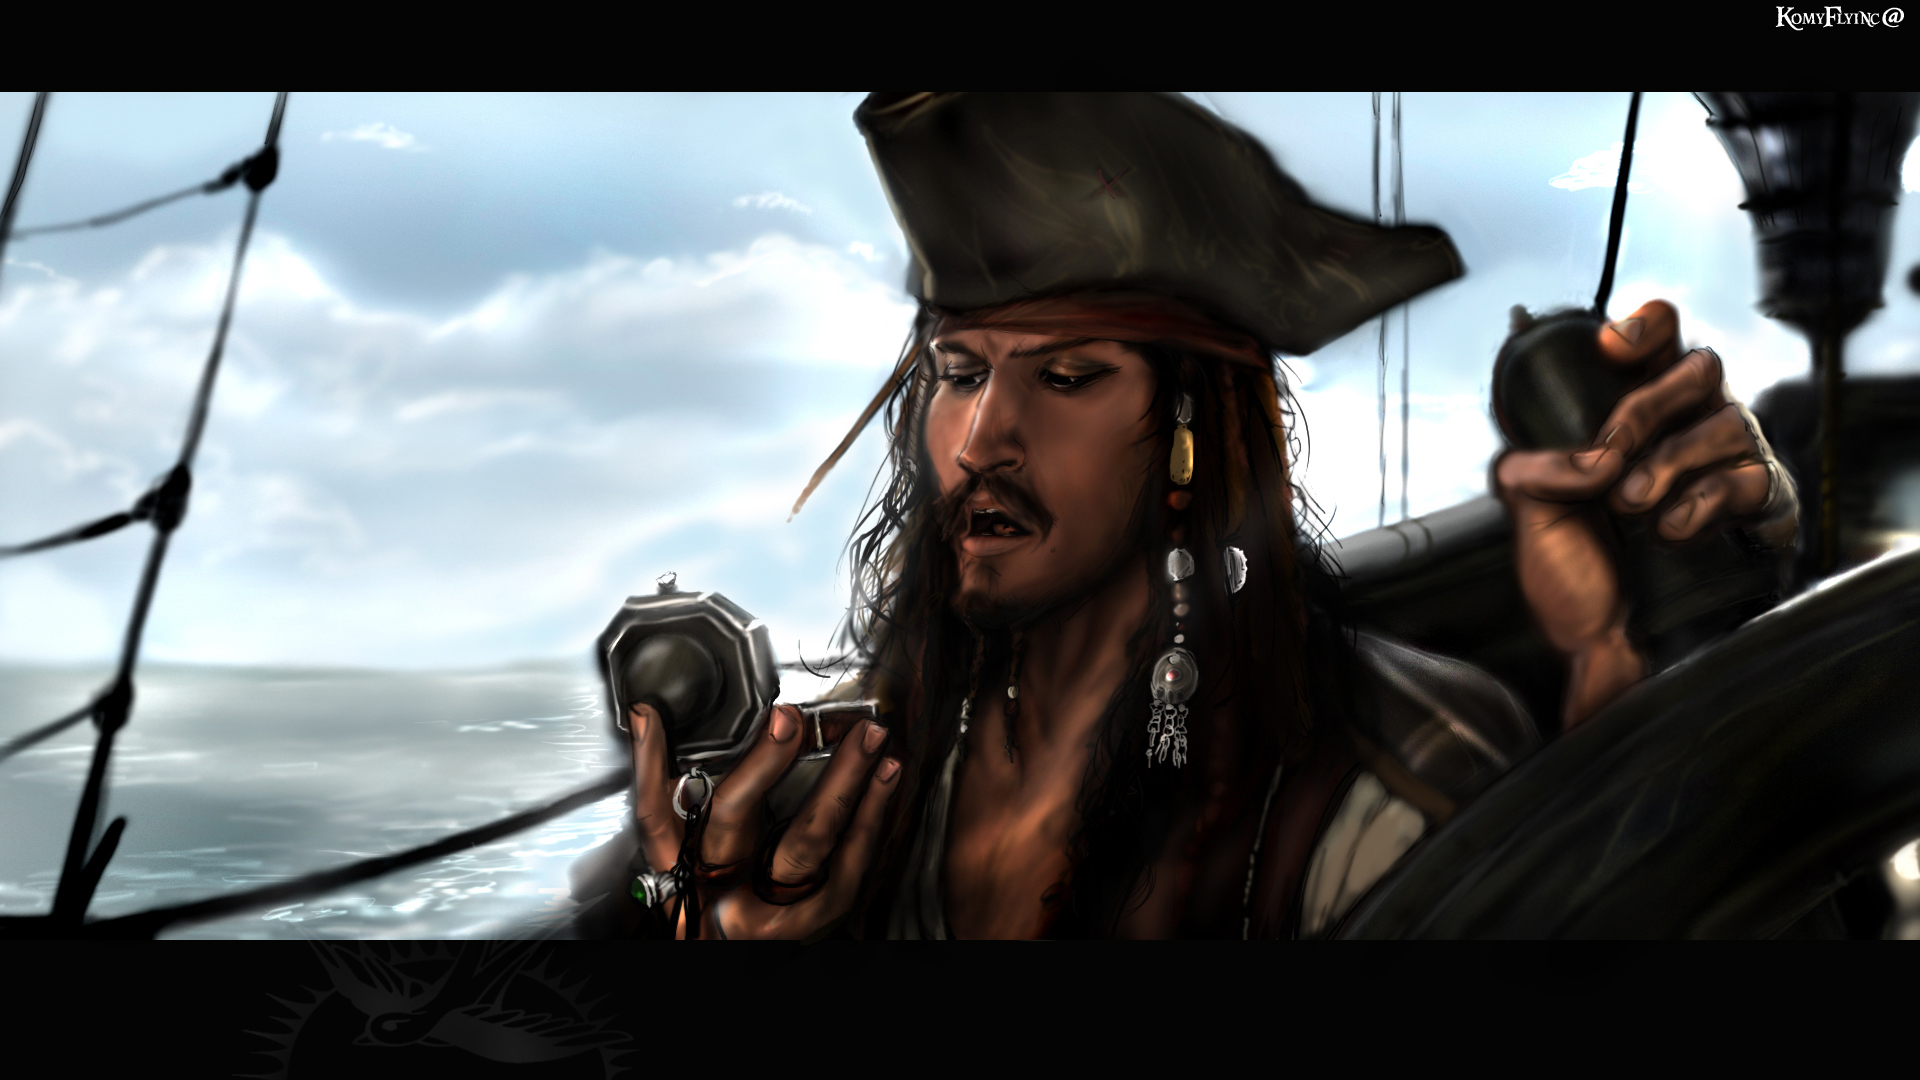 Черная про пиратов. Пираты Карибского моря Джек Воробей. Капитан Джек Воробей черная Жемчужина. Капитан Джек Воробей на корабле чёрная Жемчужина.